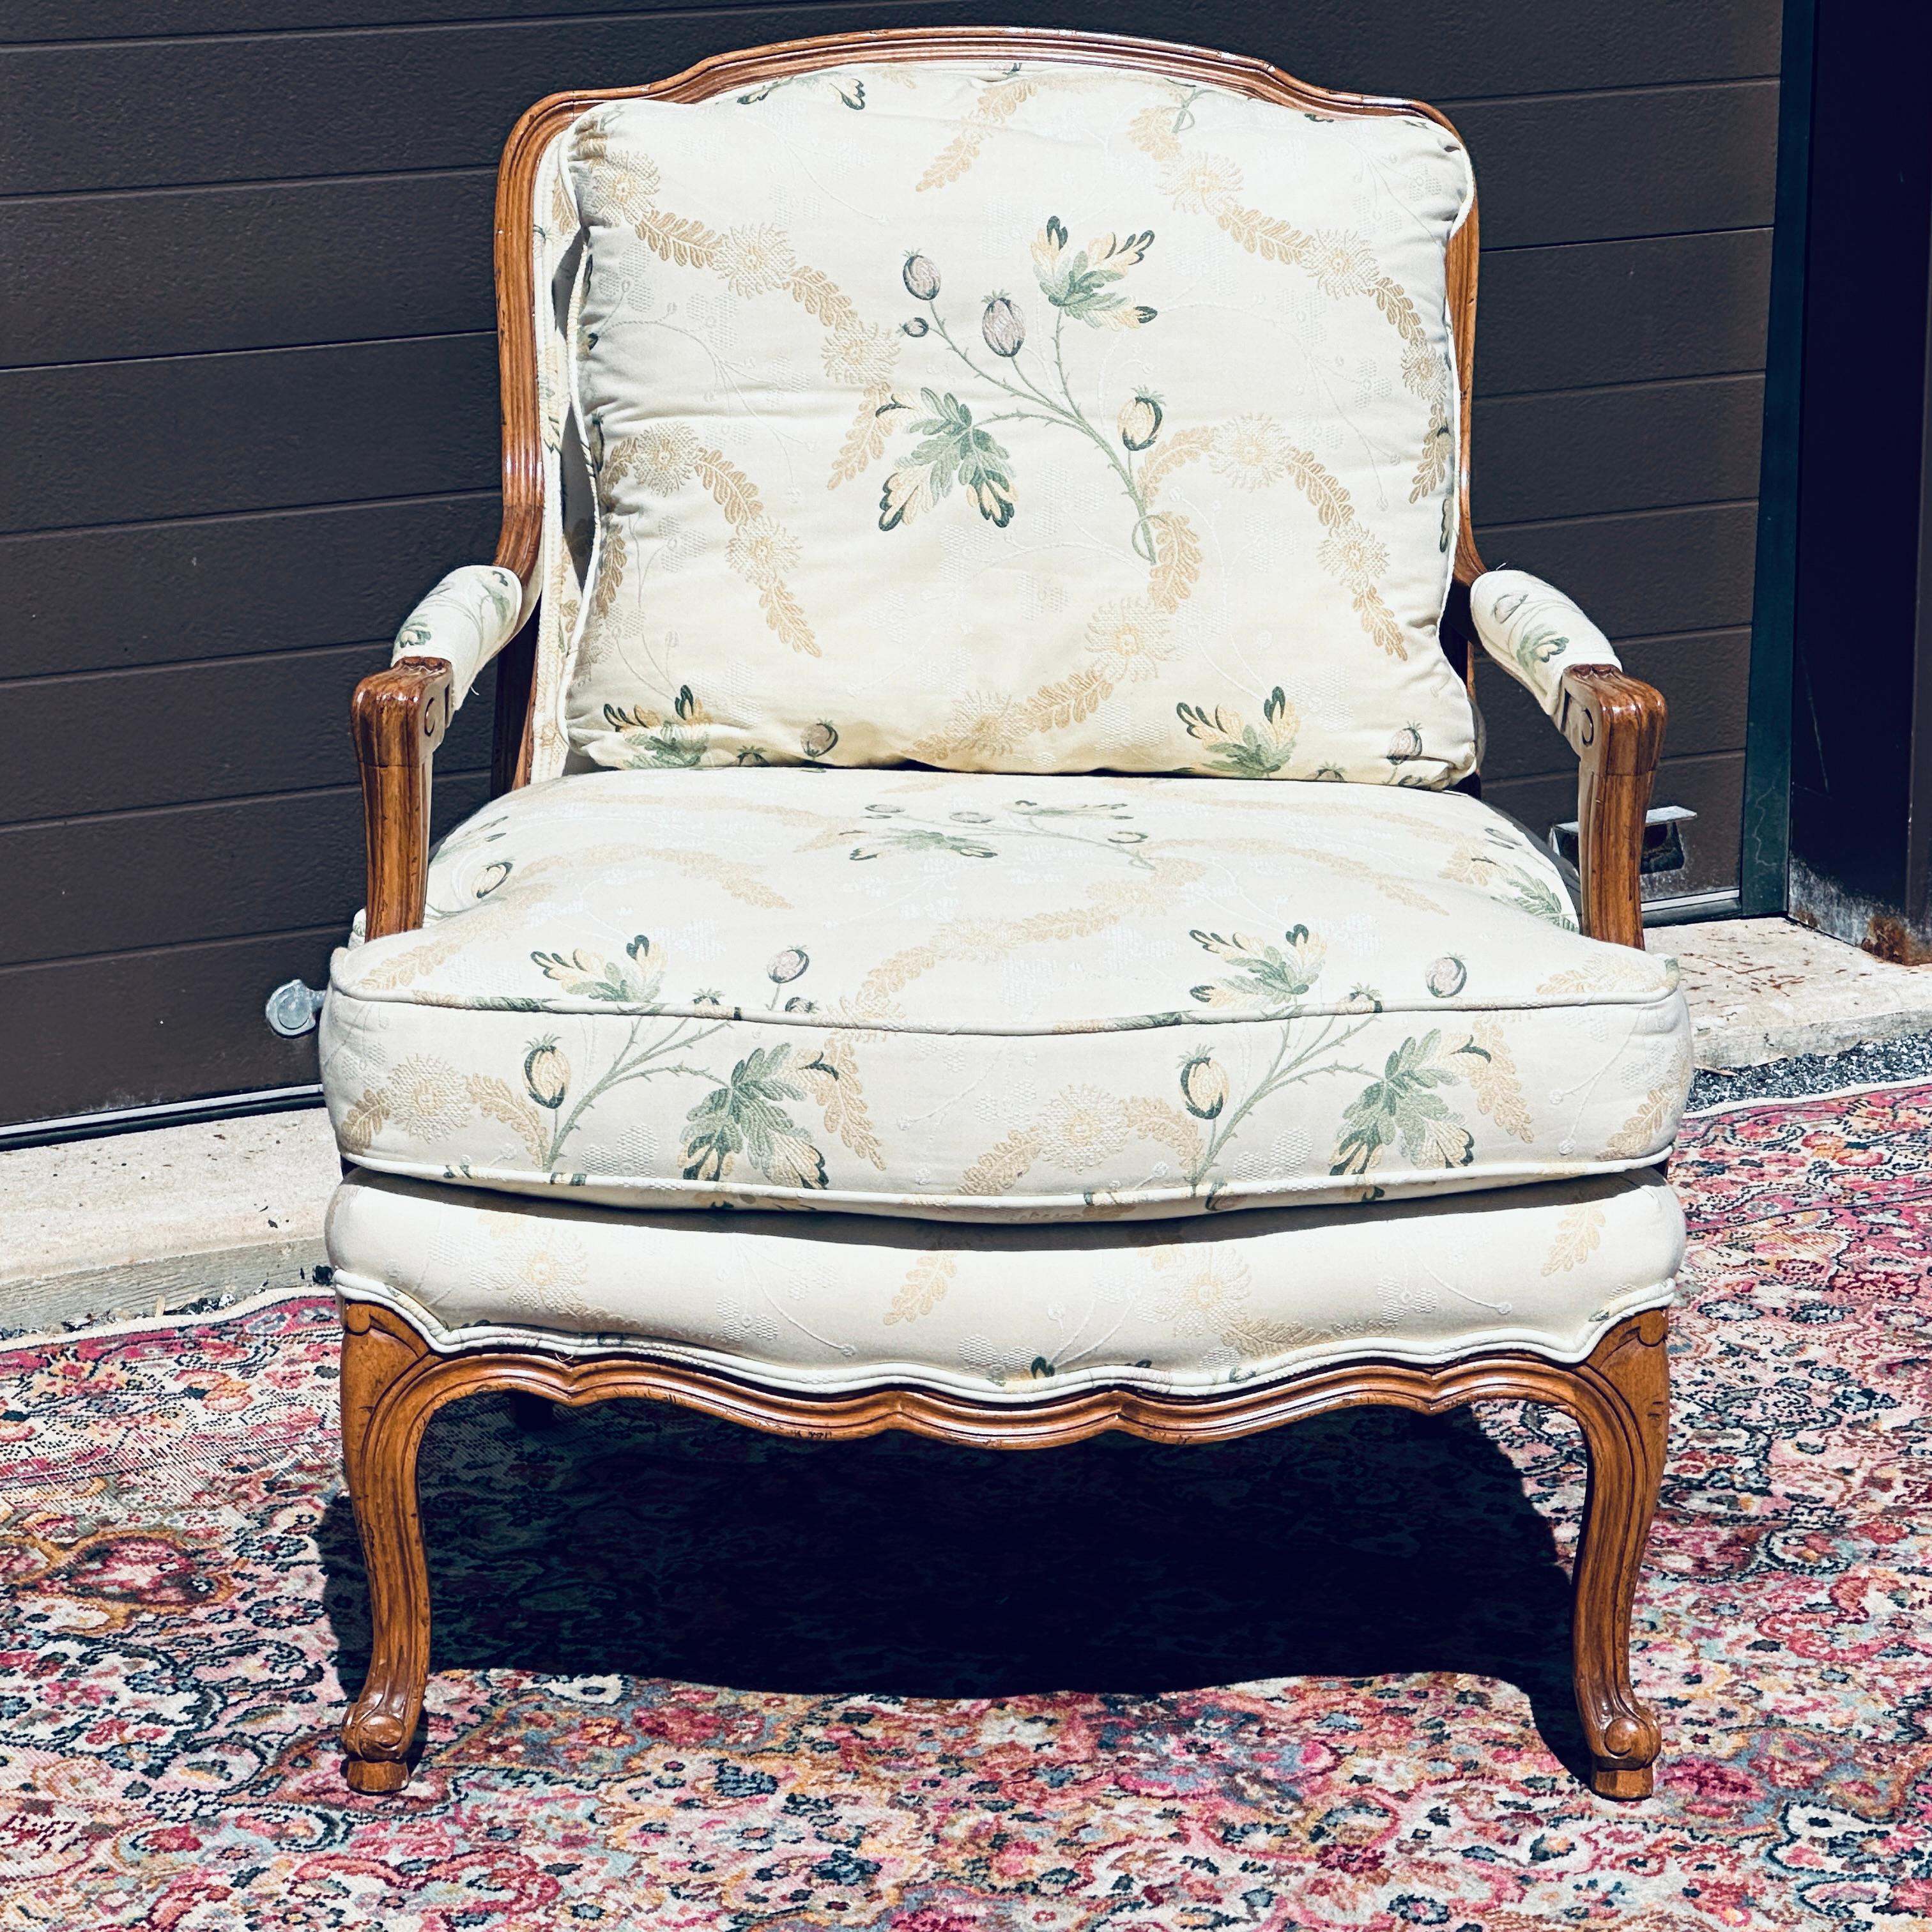 Fauteuil bergère à accoudoir ouvert de style français haut de gamme de Baker Furniture Company, avec un cadre en bois fruitier sculpté et une tapisserie florale d'origine. Les coussins libres de l'assise et du dossier sont rabattables. La couleur